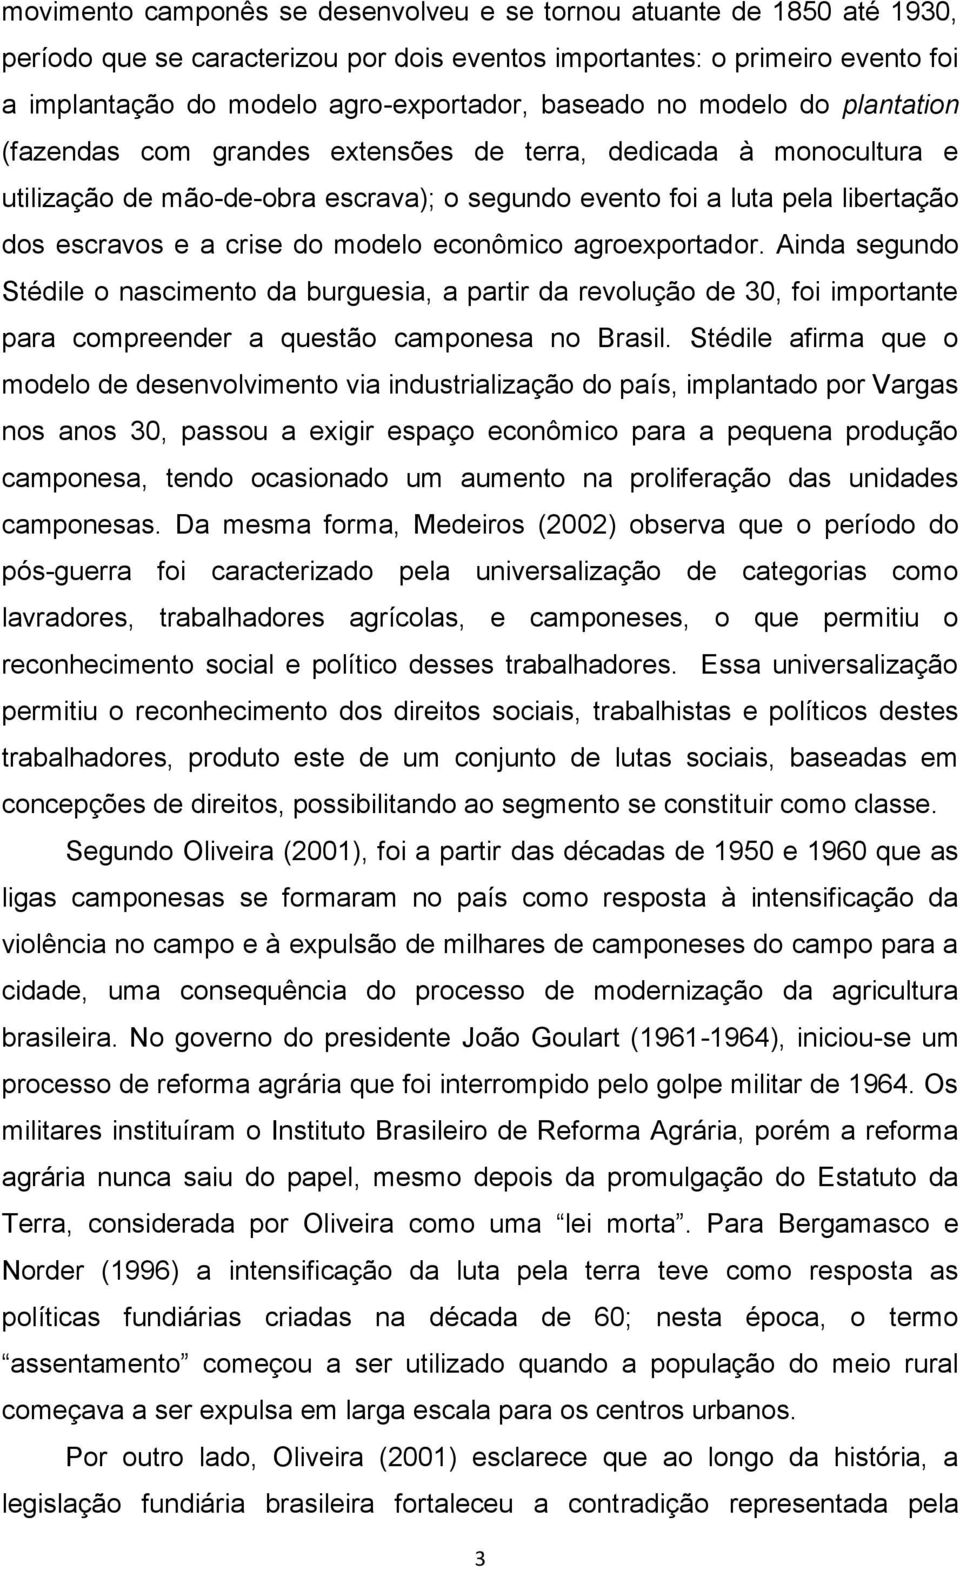 crise do modelo econômico agroexportador. Ainda segundo Stédile o nascimento da burguesia, a partir da revolução de 30, foi importante para compreender a questão camponesa no Brasil.